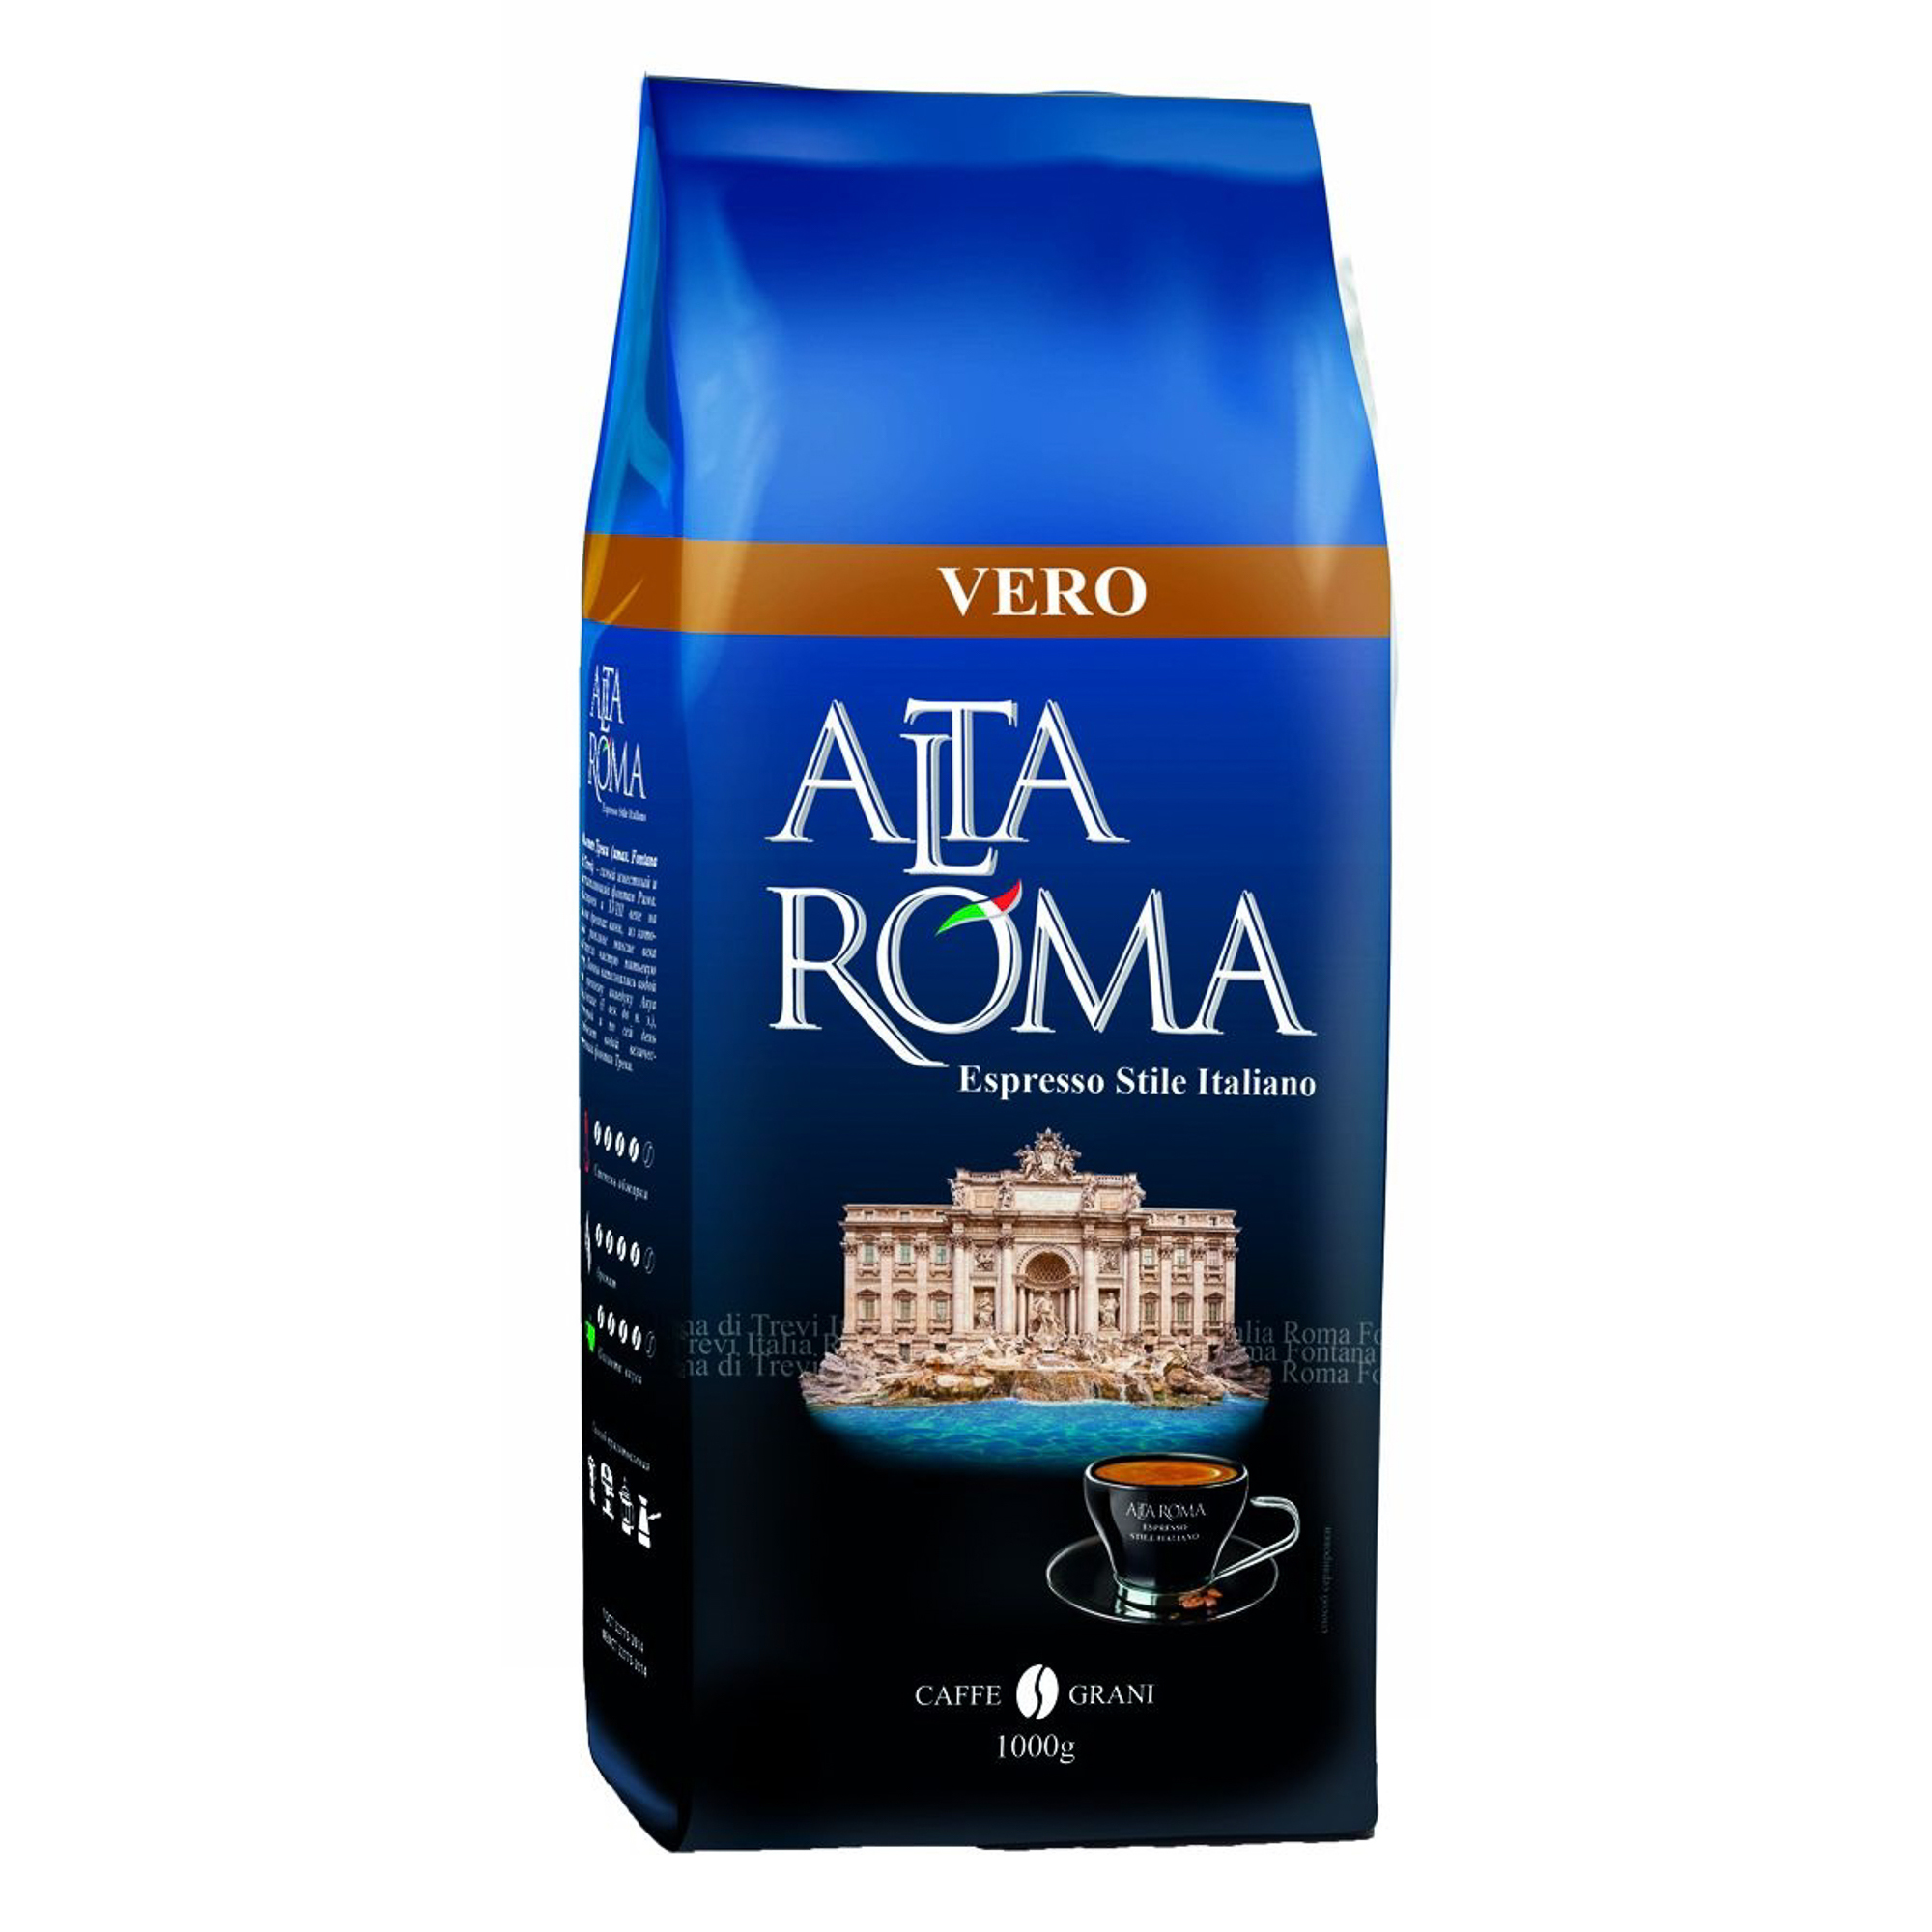 Кофе в зернах Altaroma Vero 1 кг